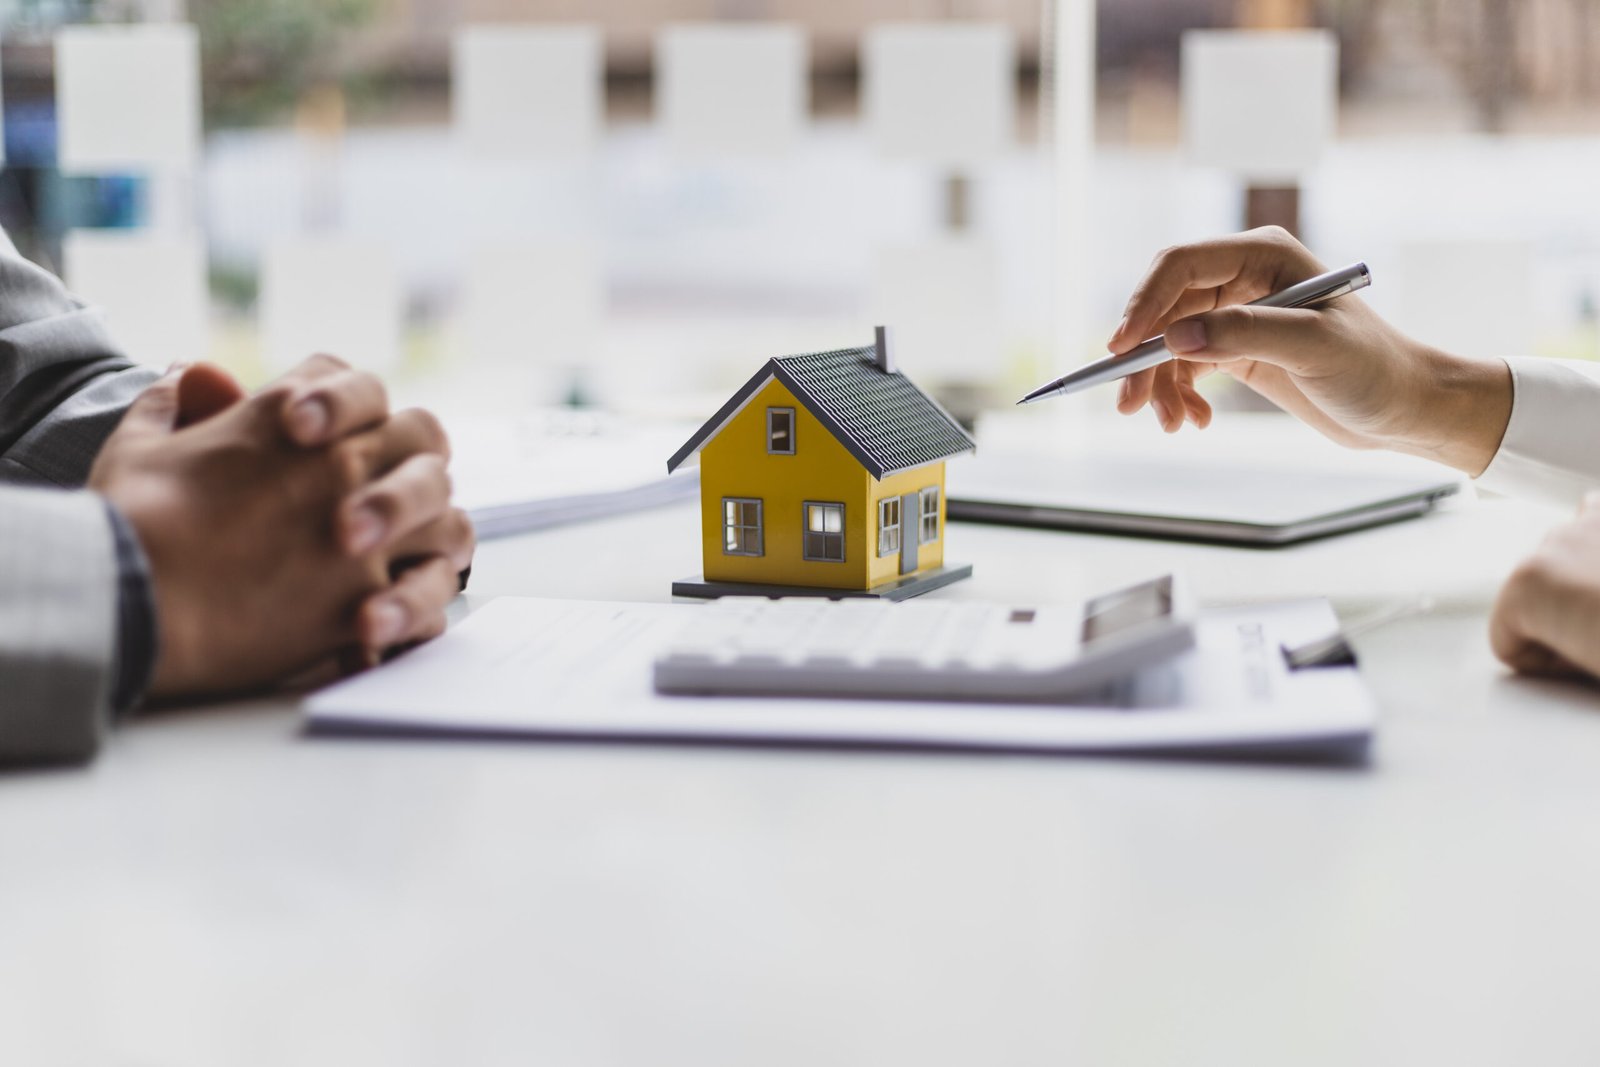 Dans un bureau d'agent immobilier, une maquette de maison attire l'attention au centre de la table alors qu'un acheteur potentiel se prépare à prendre des décisions importantes, guidé par un professionnel.